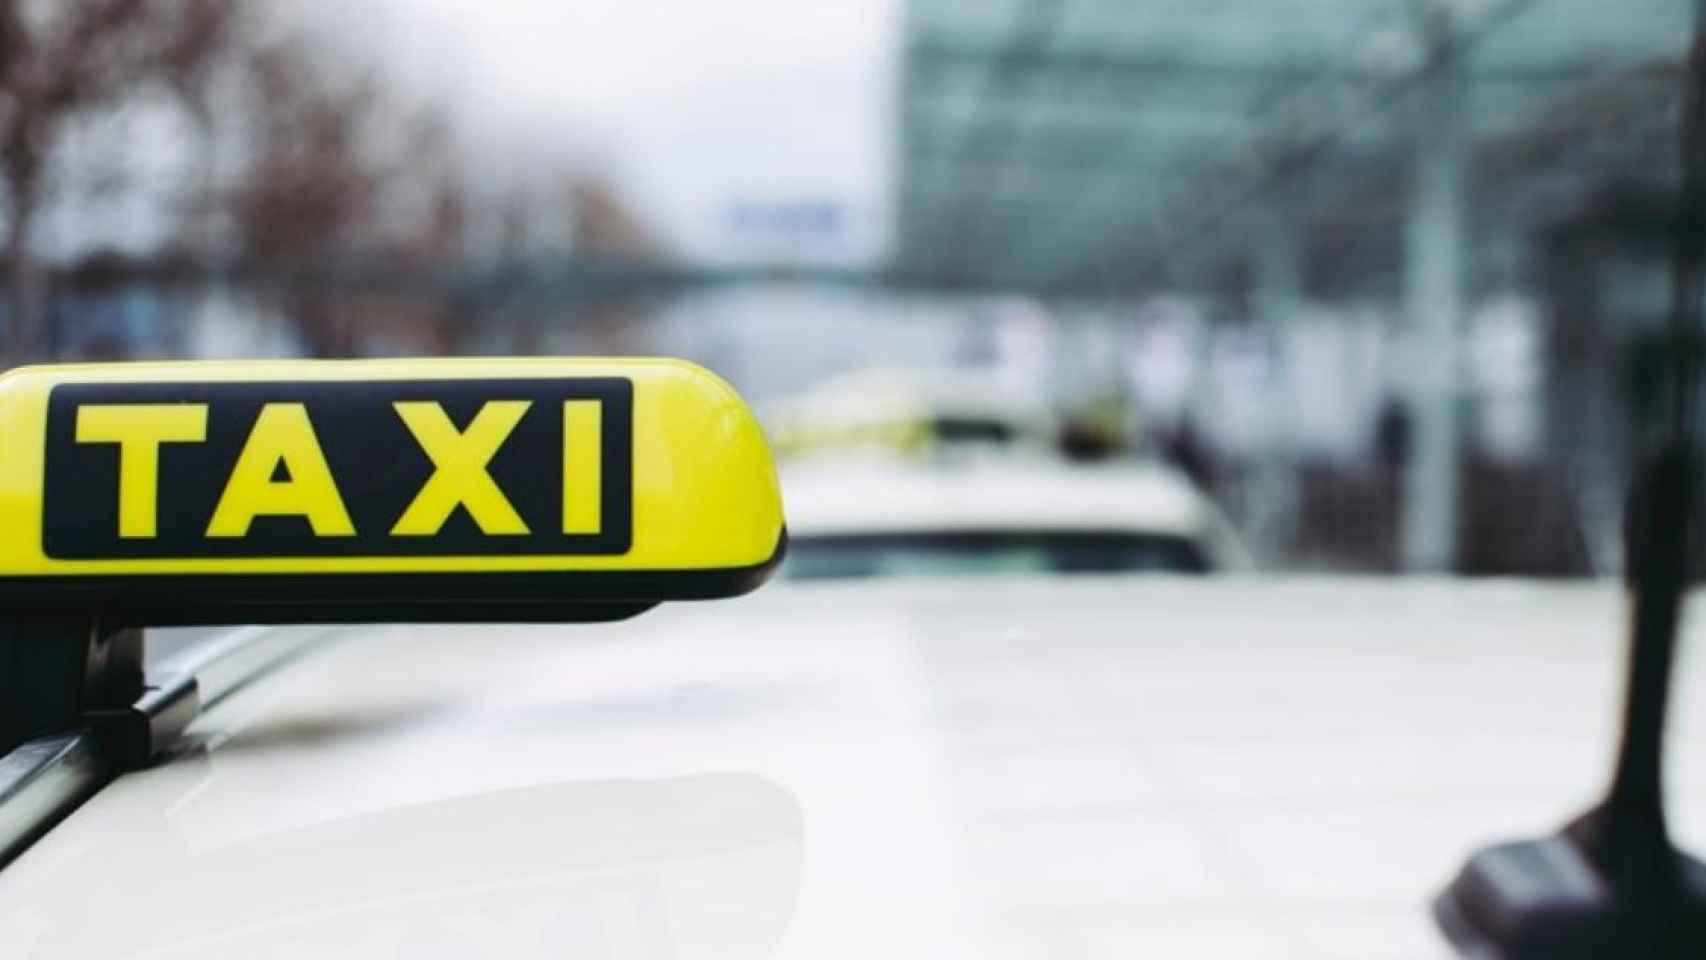 Imagen de la señal luminosa de un taxi / Markus Spiske en UNSPLASH